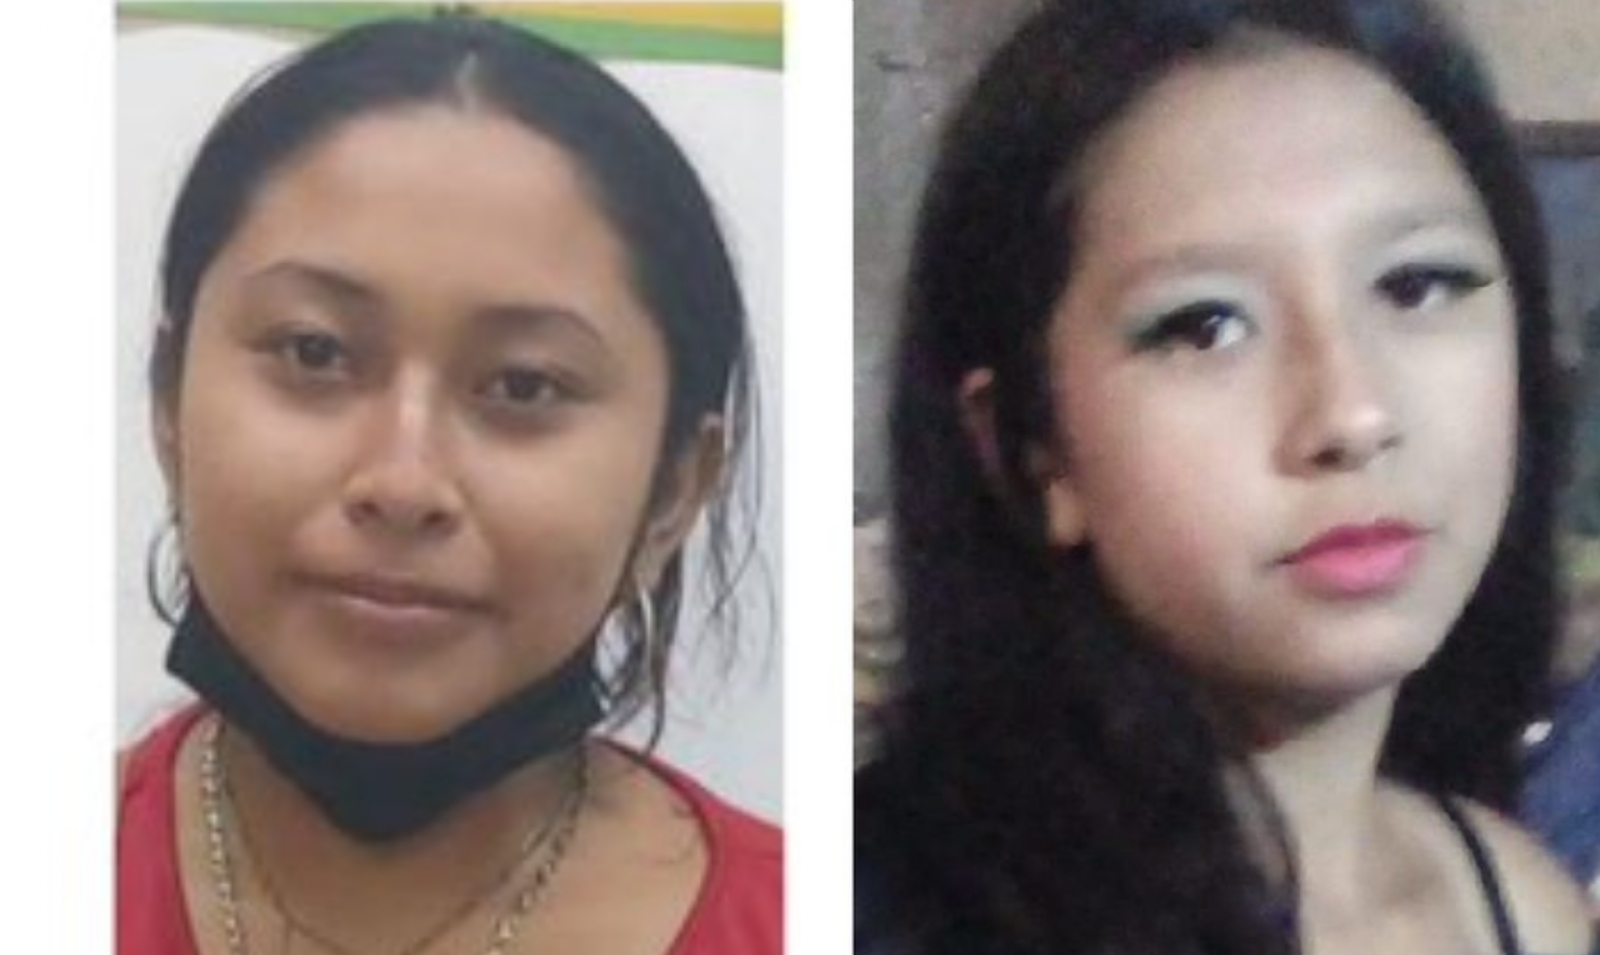 Las dos jóvenes desaparecidas fueron vistas por última vez en dos puntos de la ciudad de Mérida